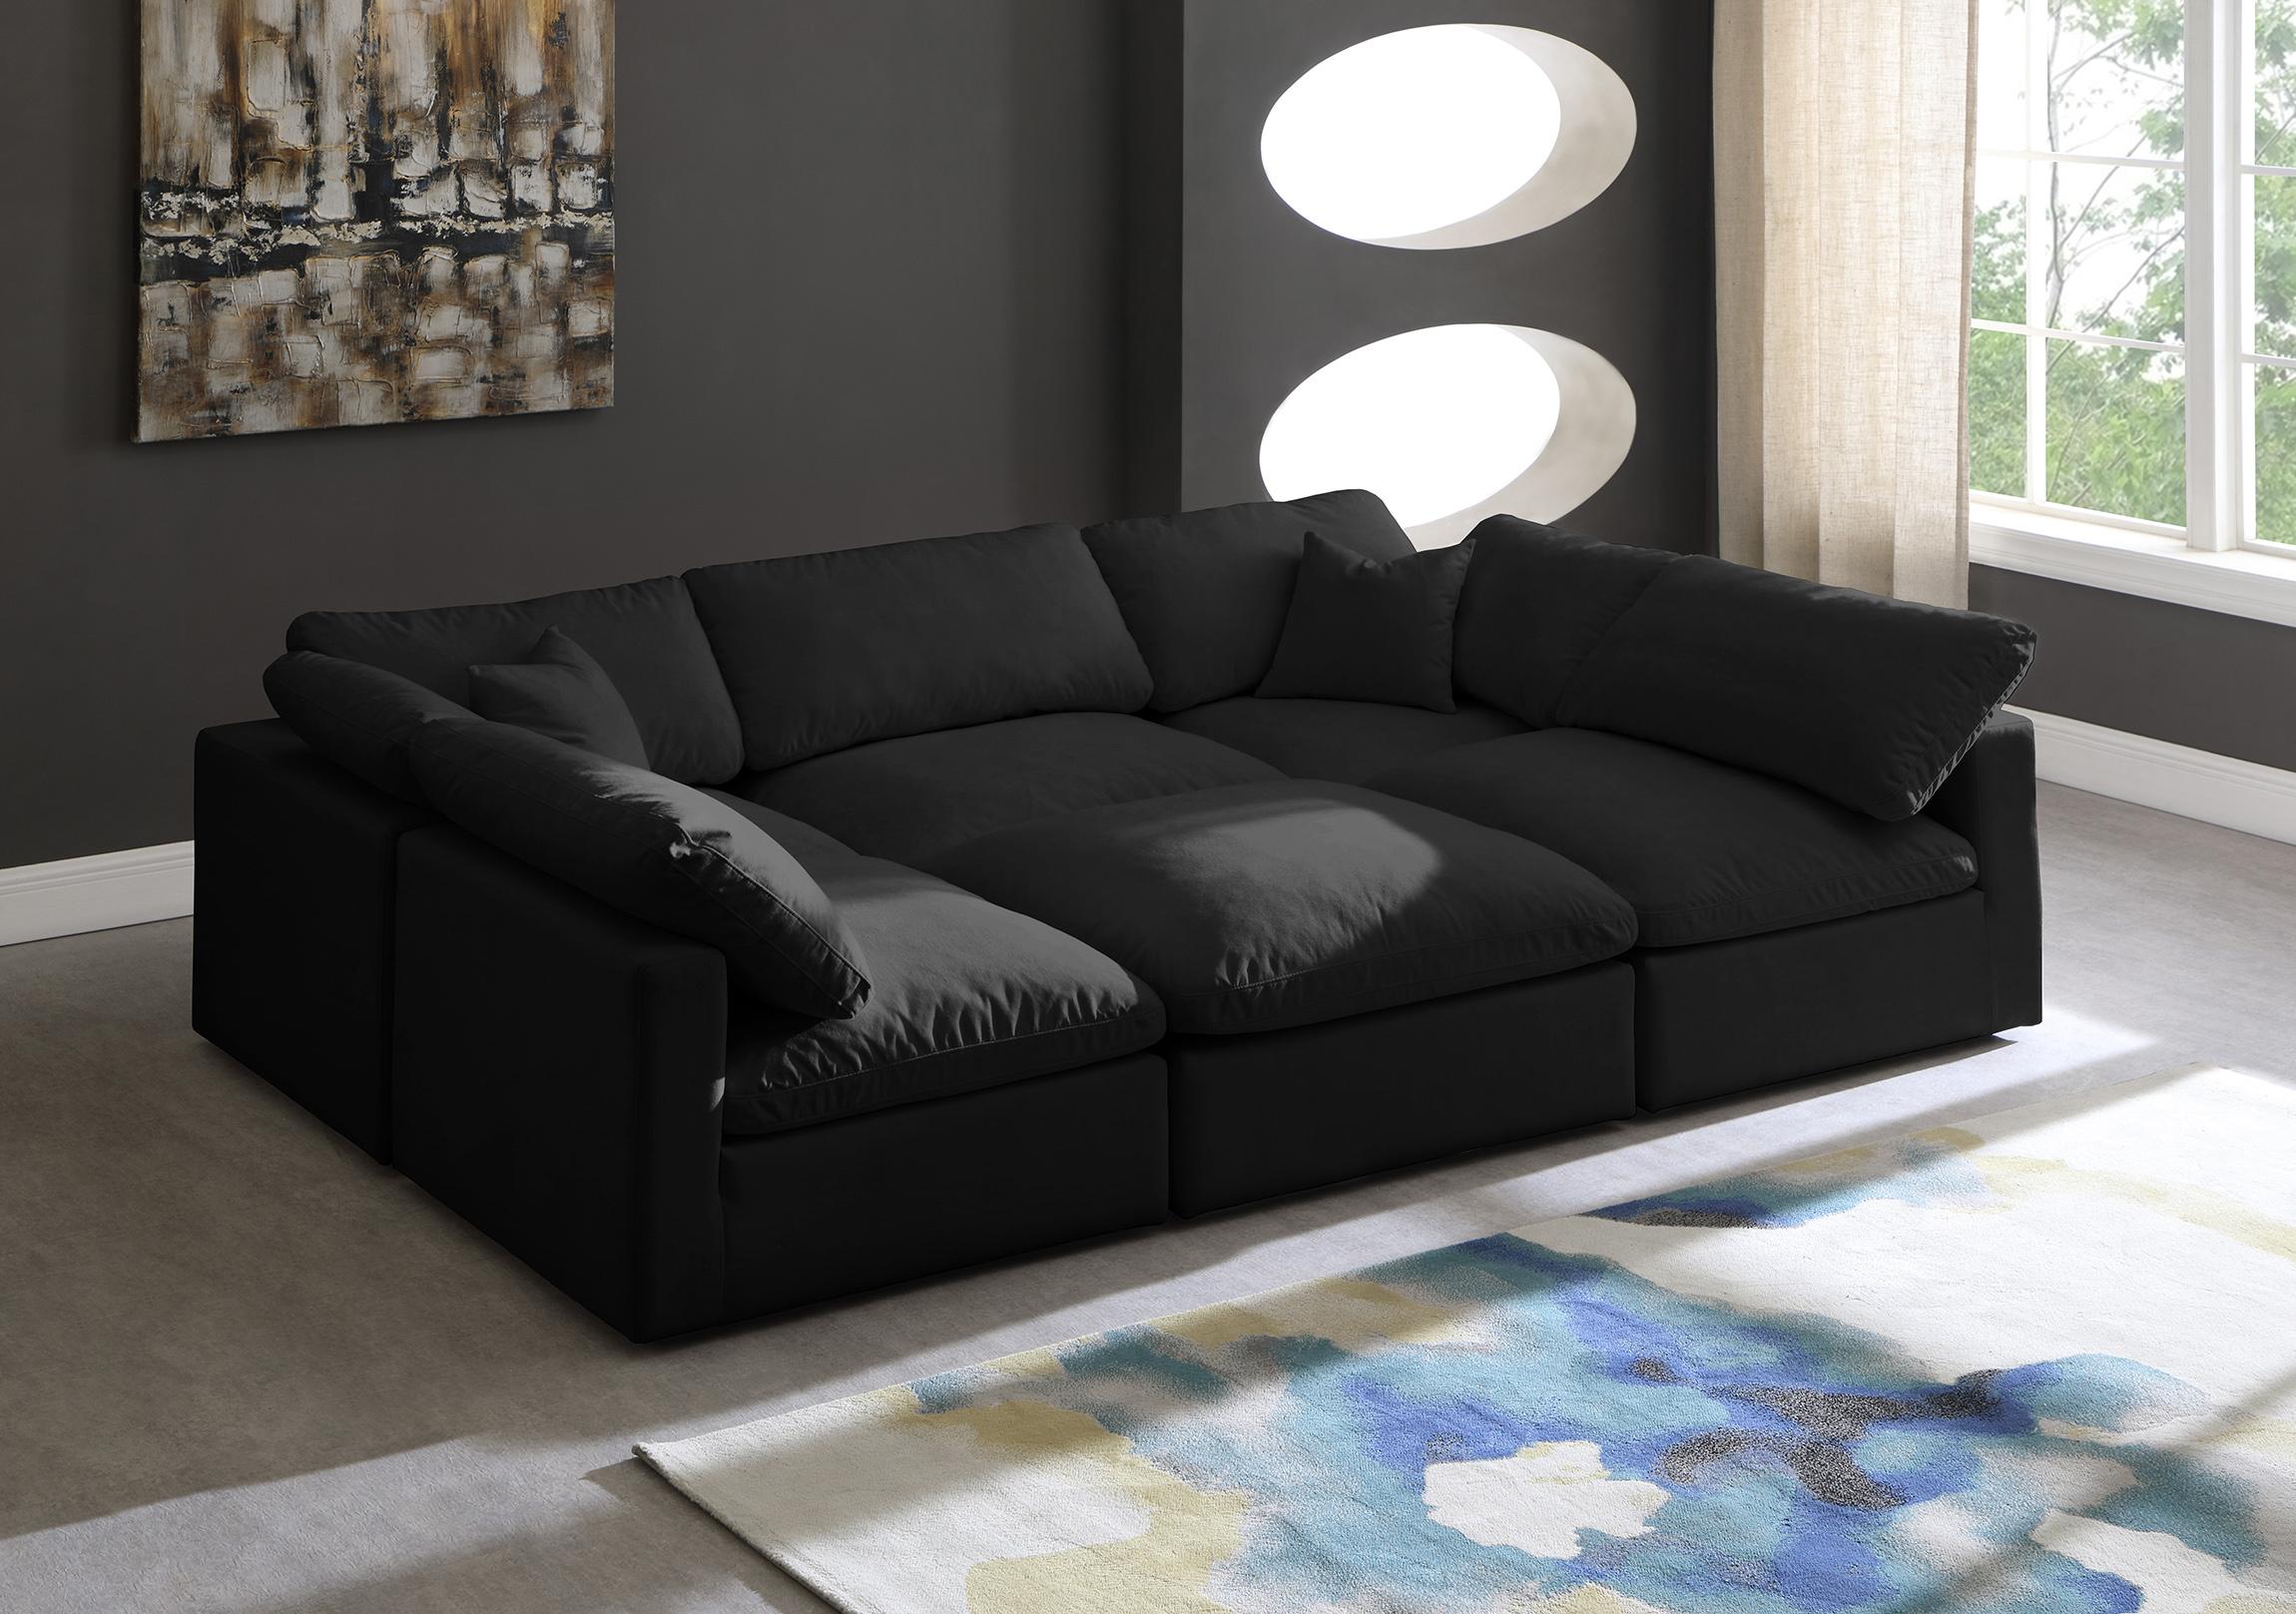 

    
Meridian Furniture 602Black-Sec6C Modular Sectional Sofa Black 602Black-Sec6C
